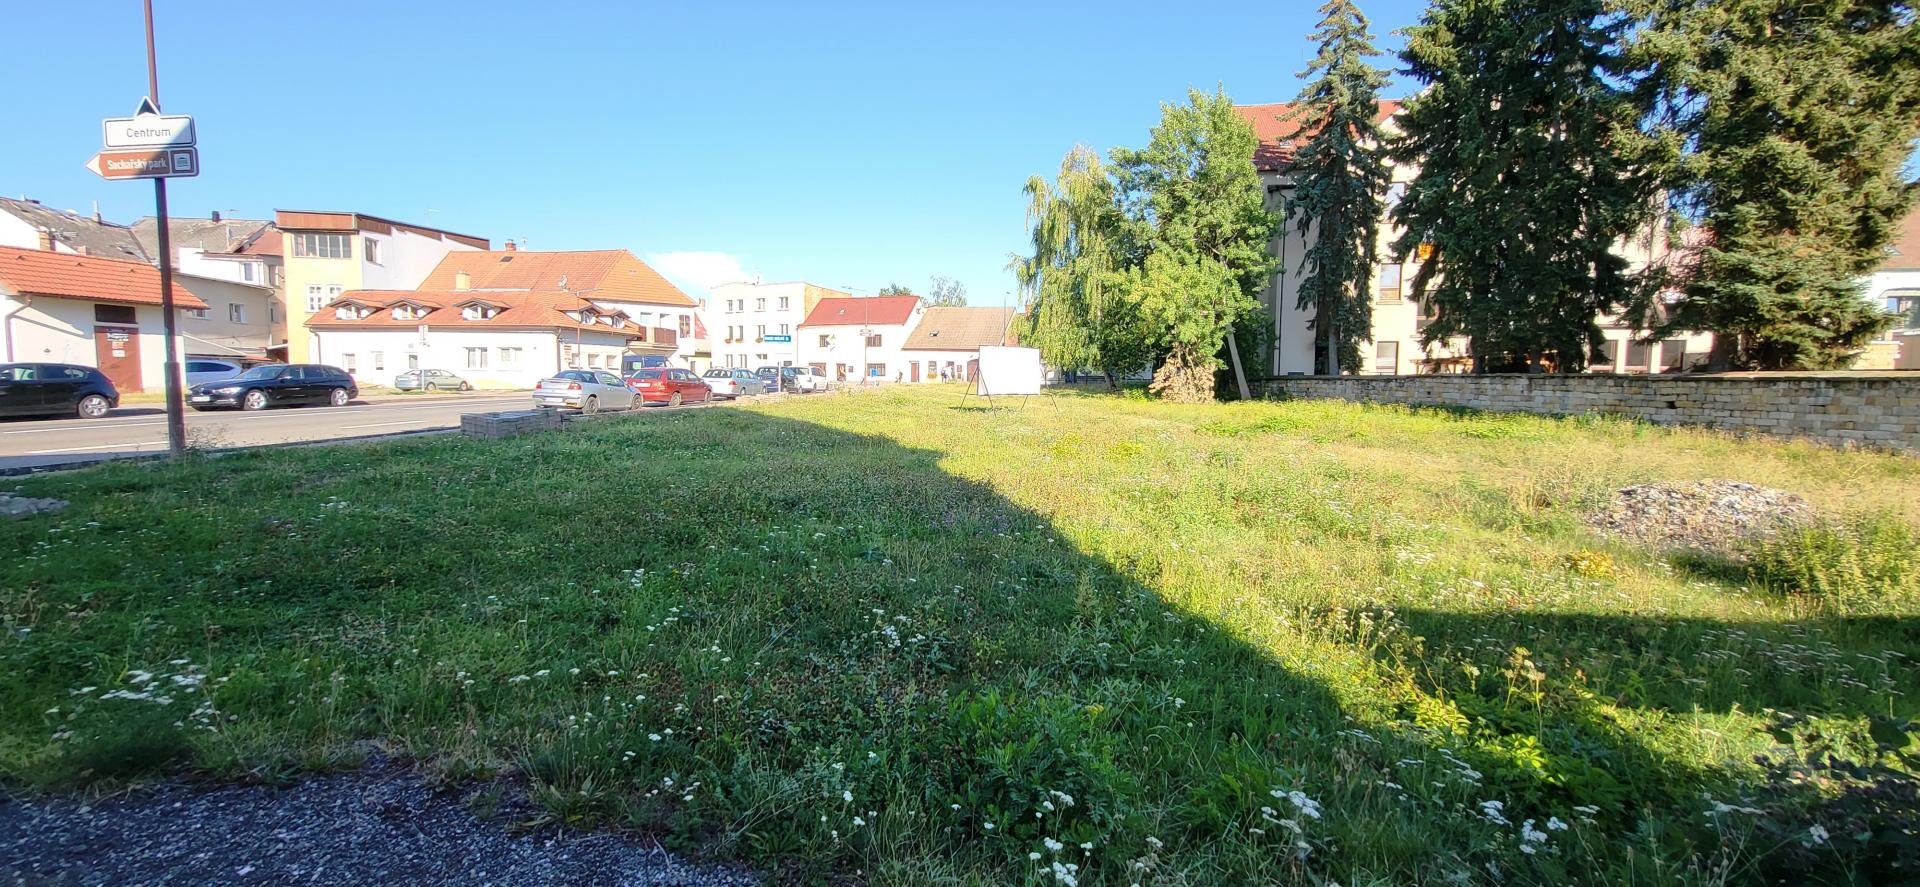 Stavební pozemek smíšený na komerční využití i bydlení v centru města Hořice 917 m2 , obrázek č. 3